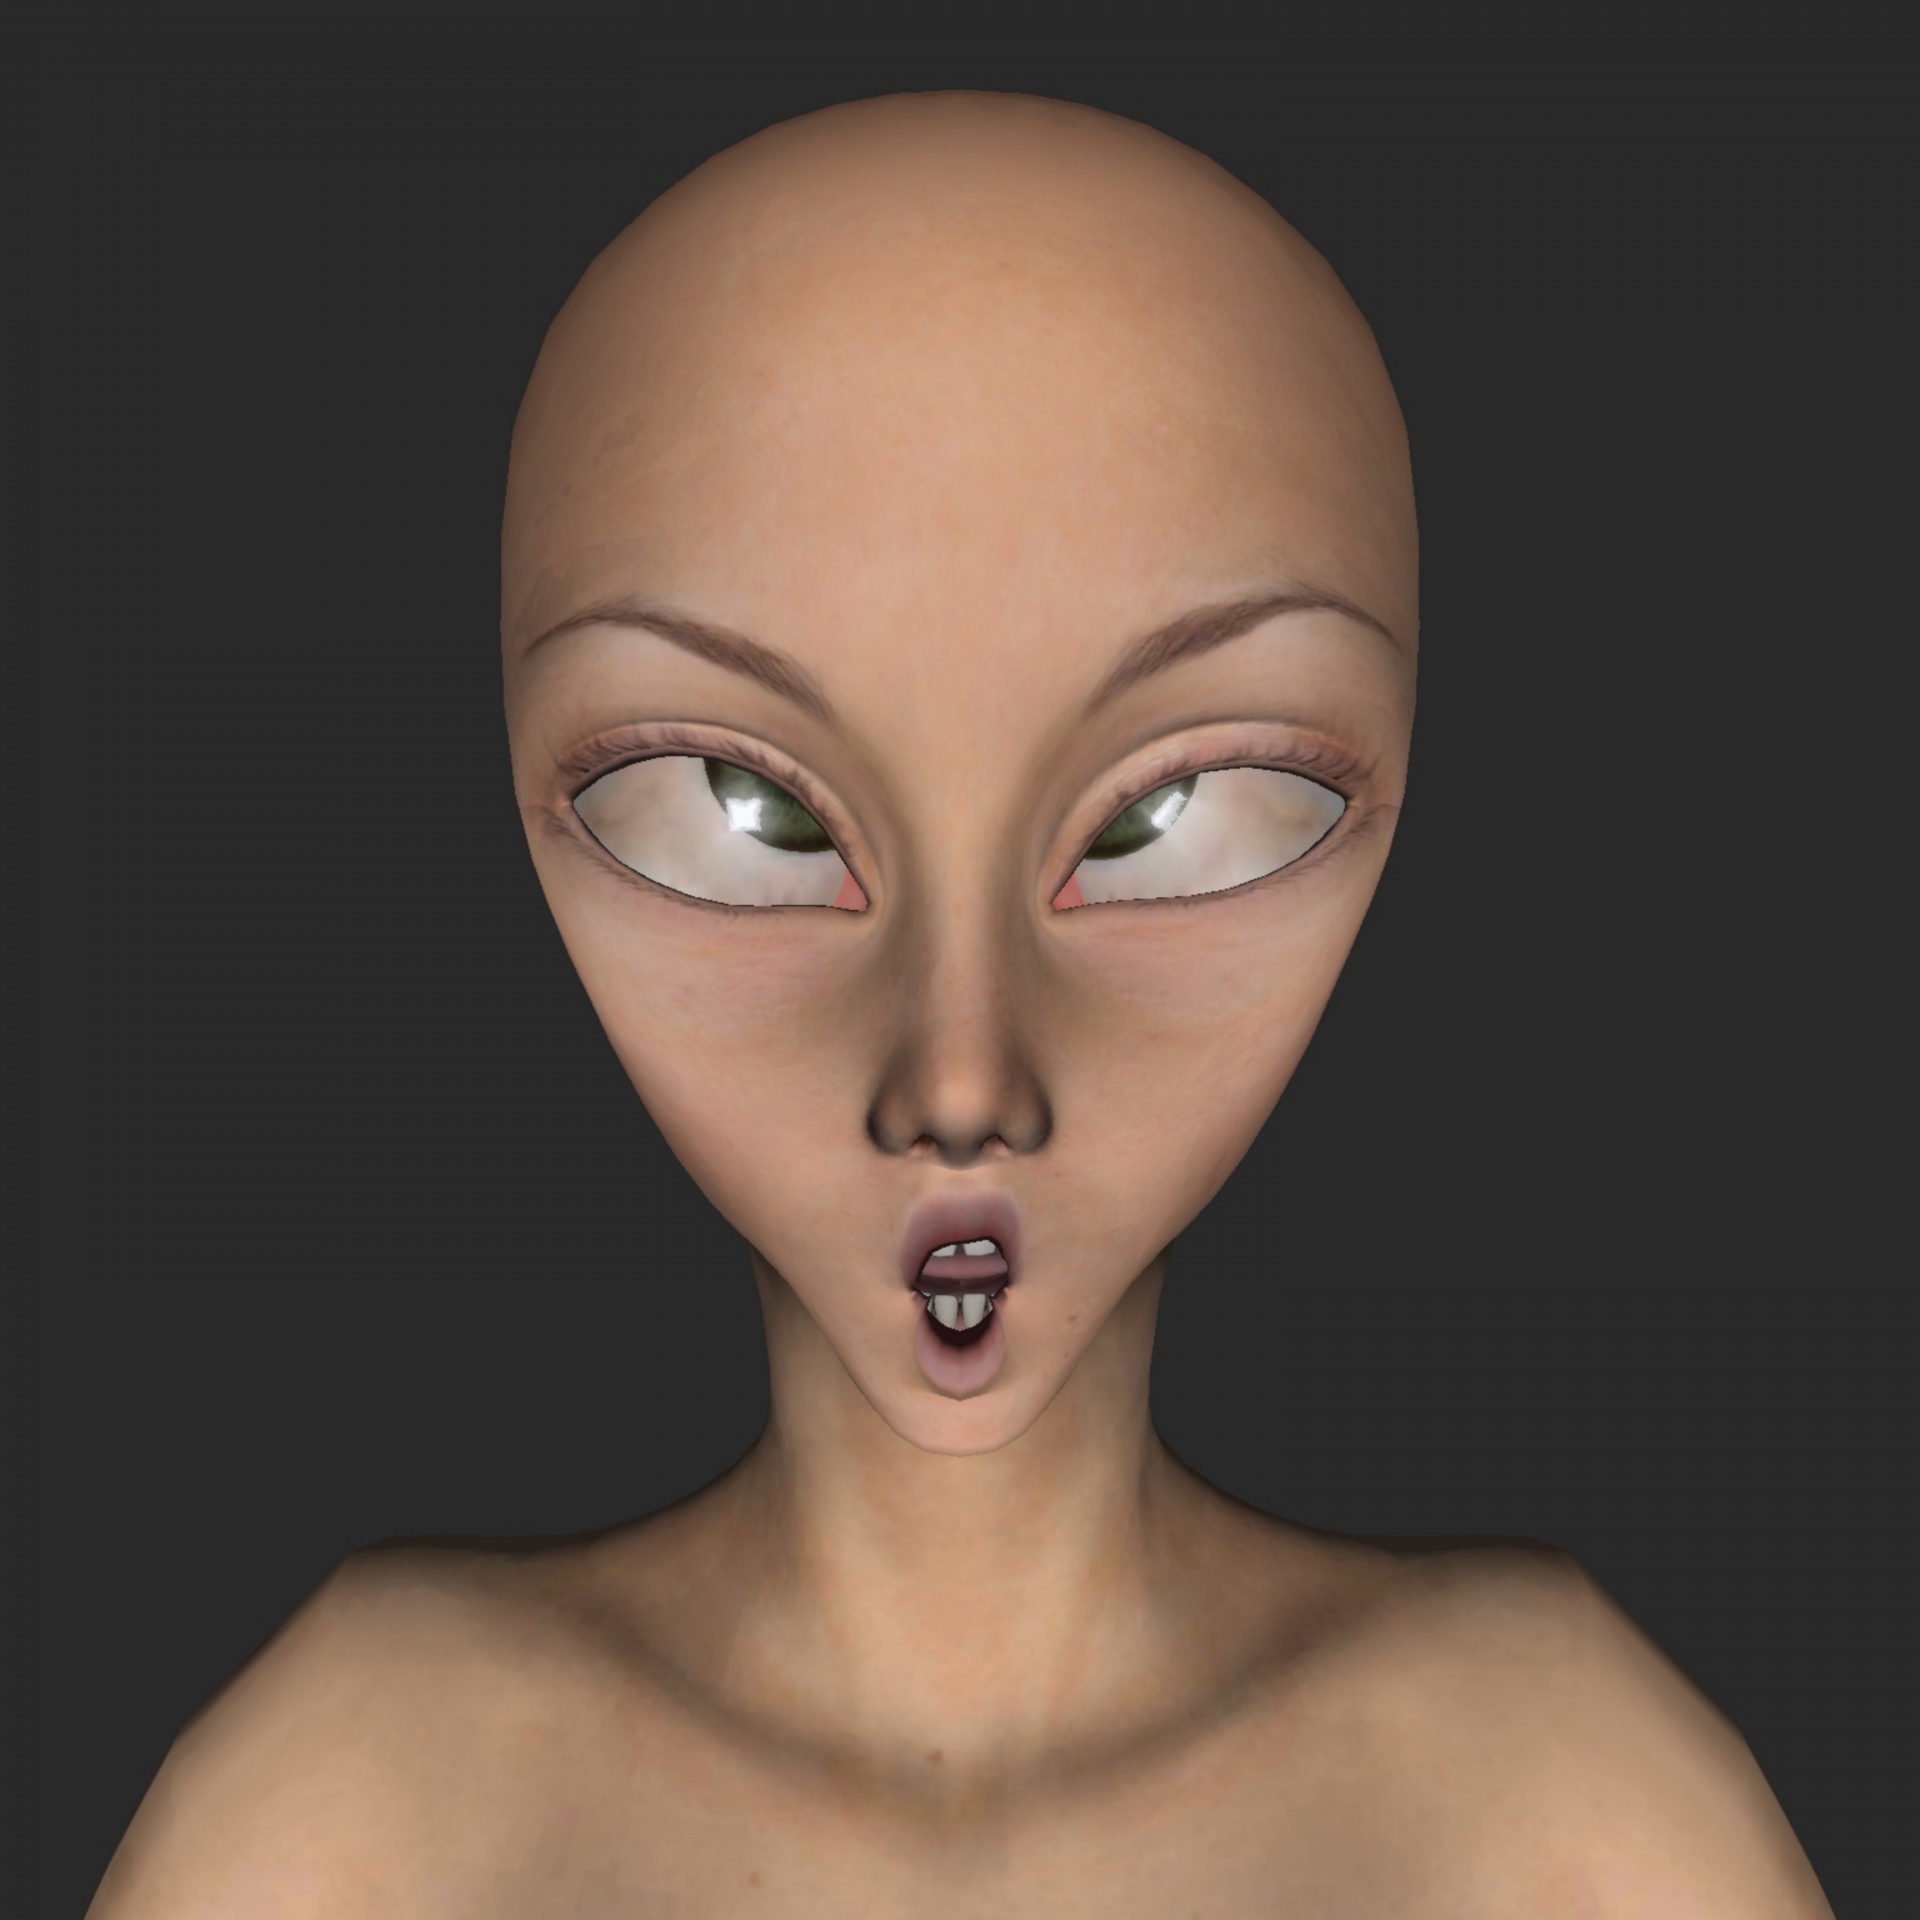 alien face head free photo